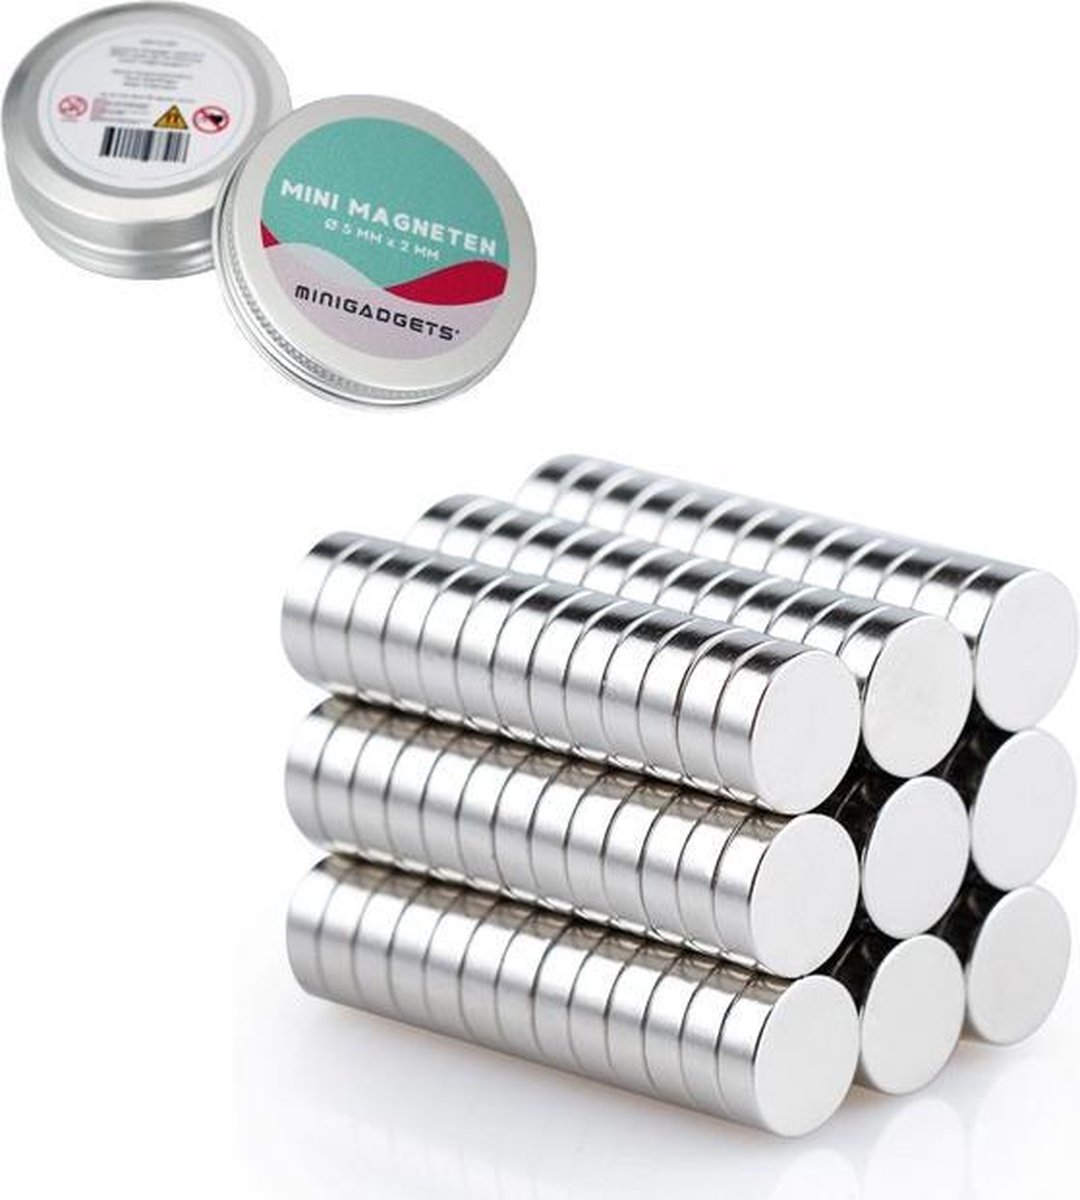 Expertise Clancy Adviseren Super sterke magneten - 5 x 2 mm (50-stuks) - Rond - Neodymium - Koelkast  magneten -... | bol.com